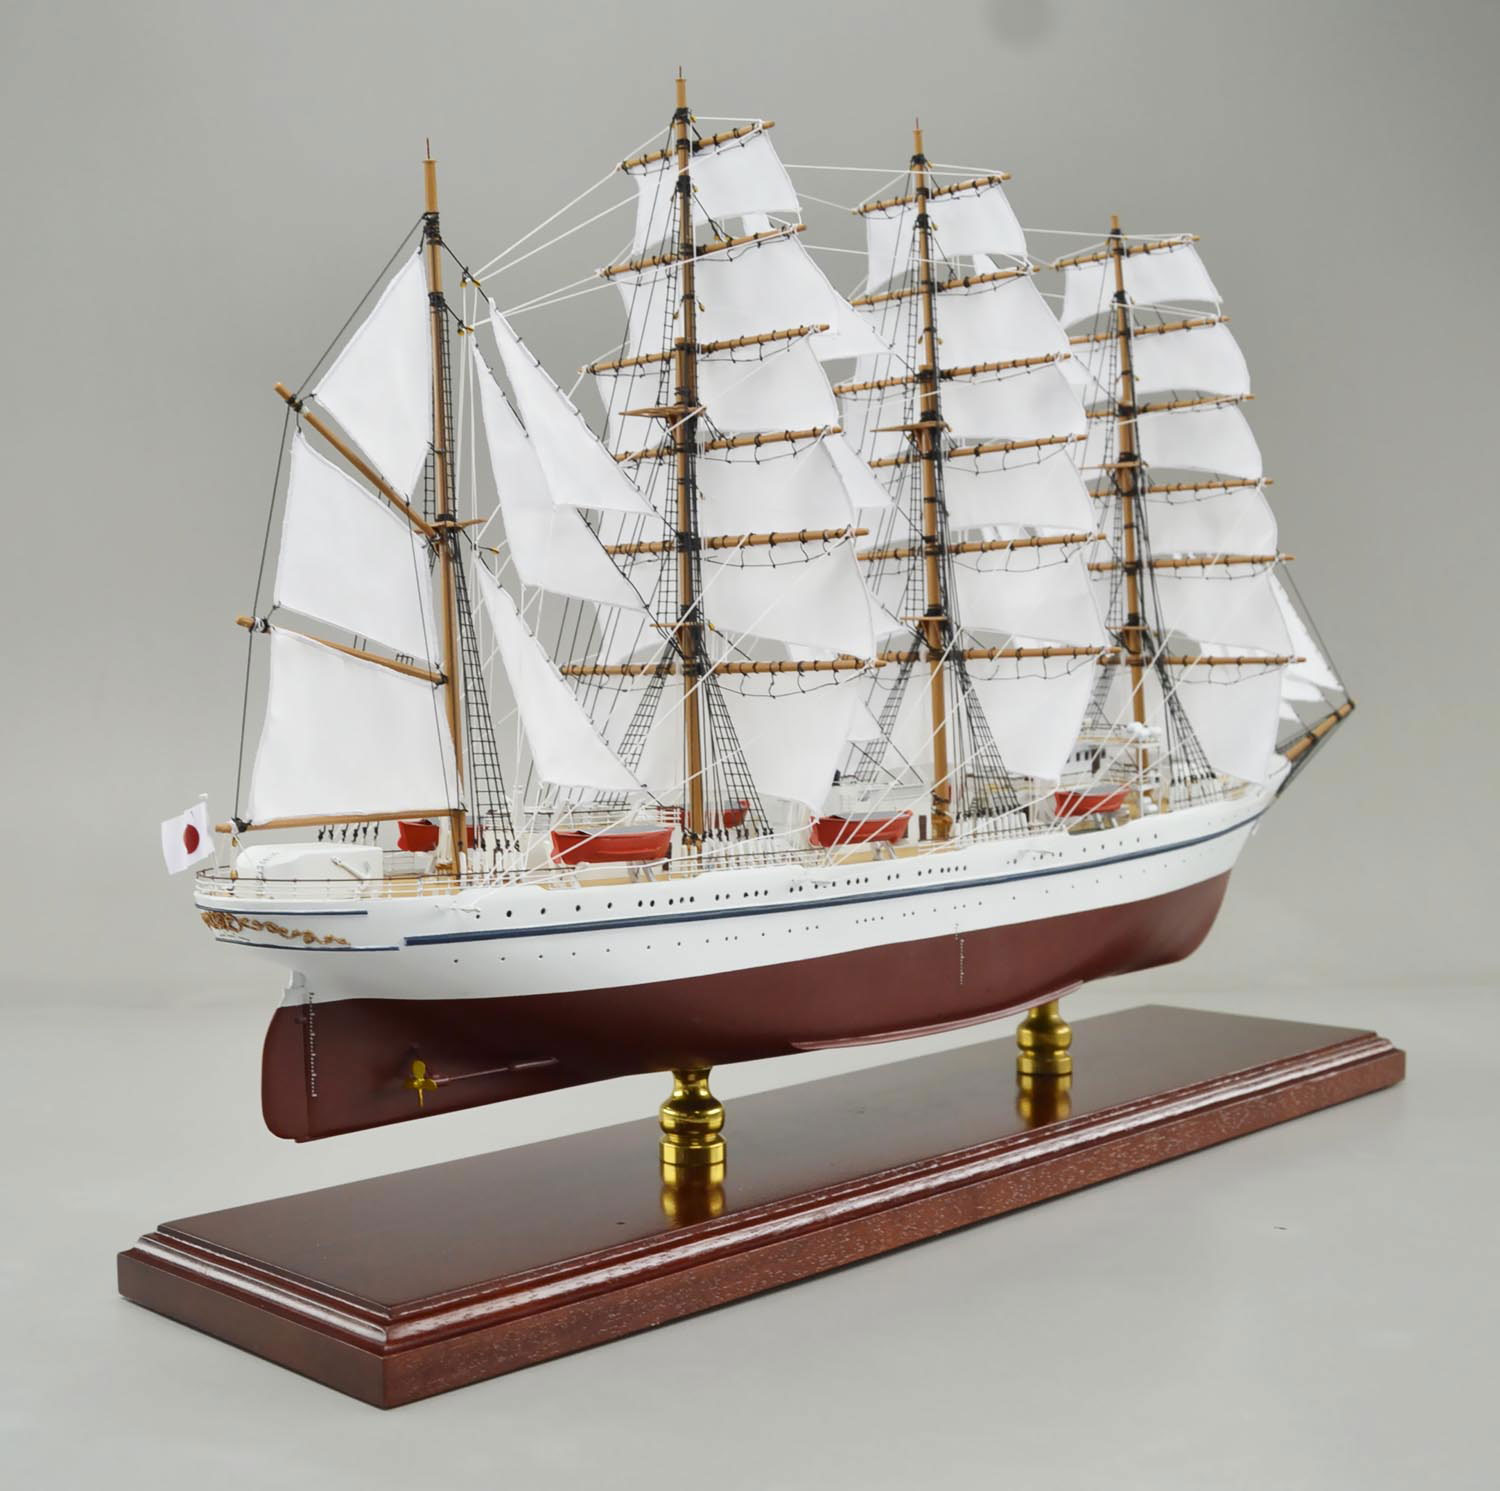 □大型帆船 日本丸精密模型完成品 精密帆船模型 ハンドメイド木製帆船